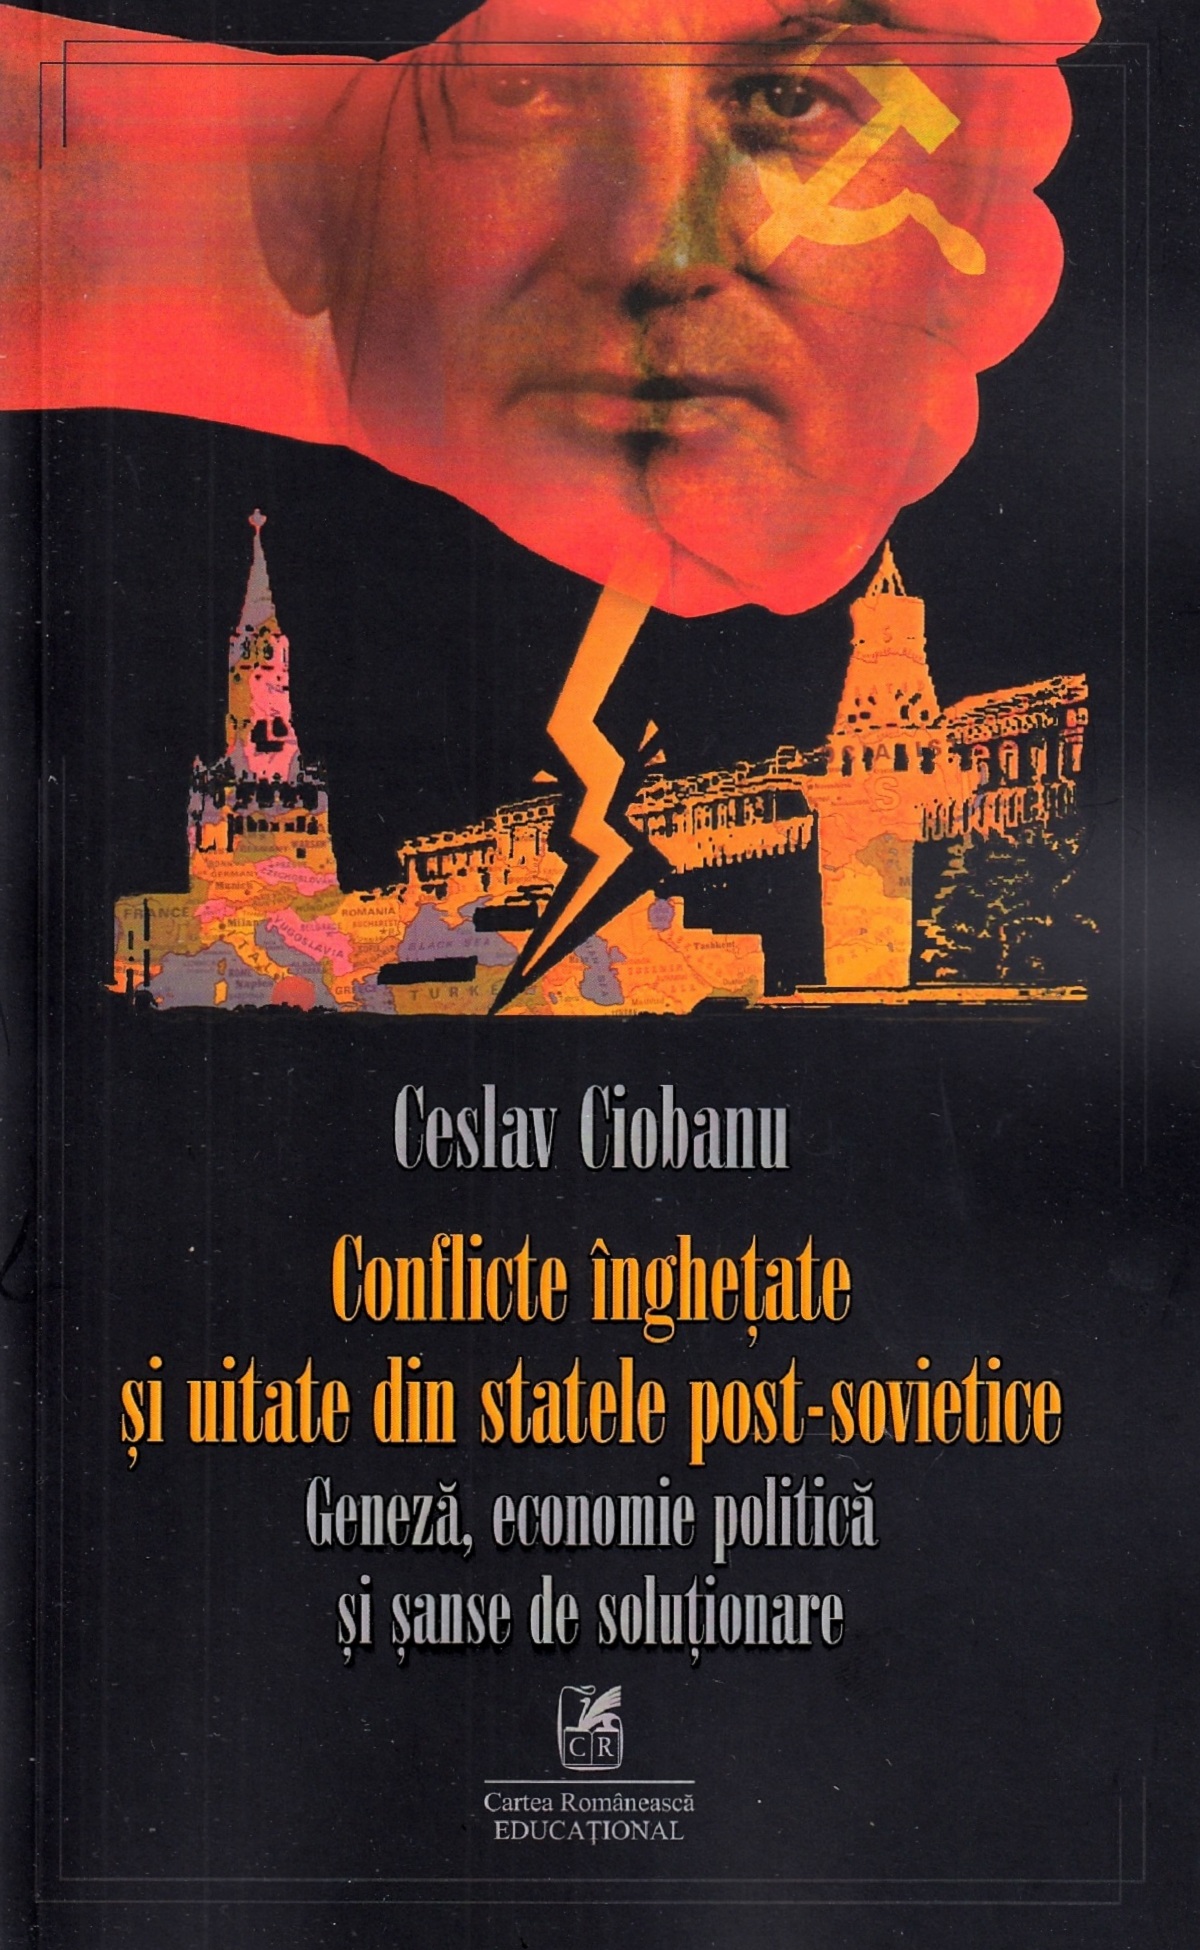 Conflicte inghetare si uitate din statele post-sovietice - Ceslav Ciobanu